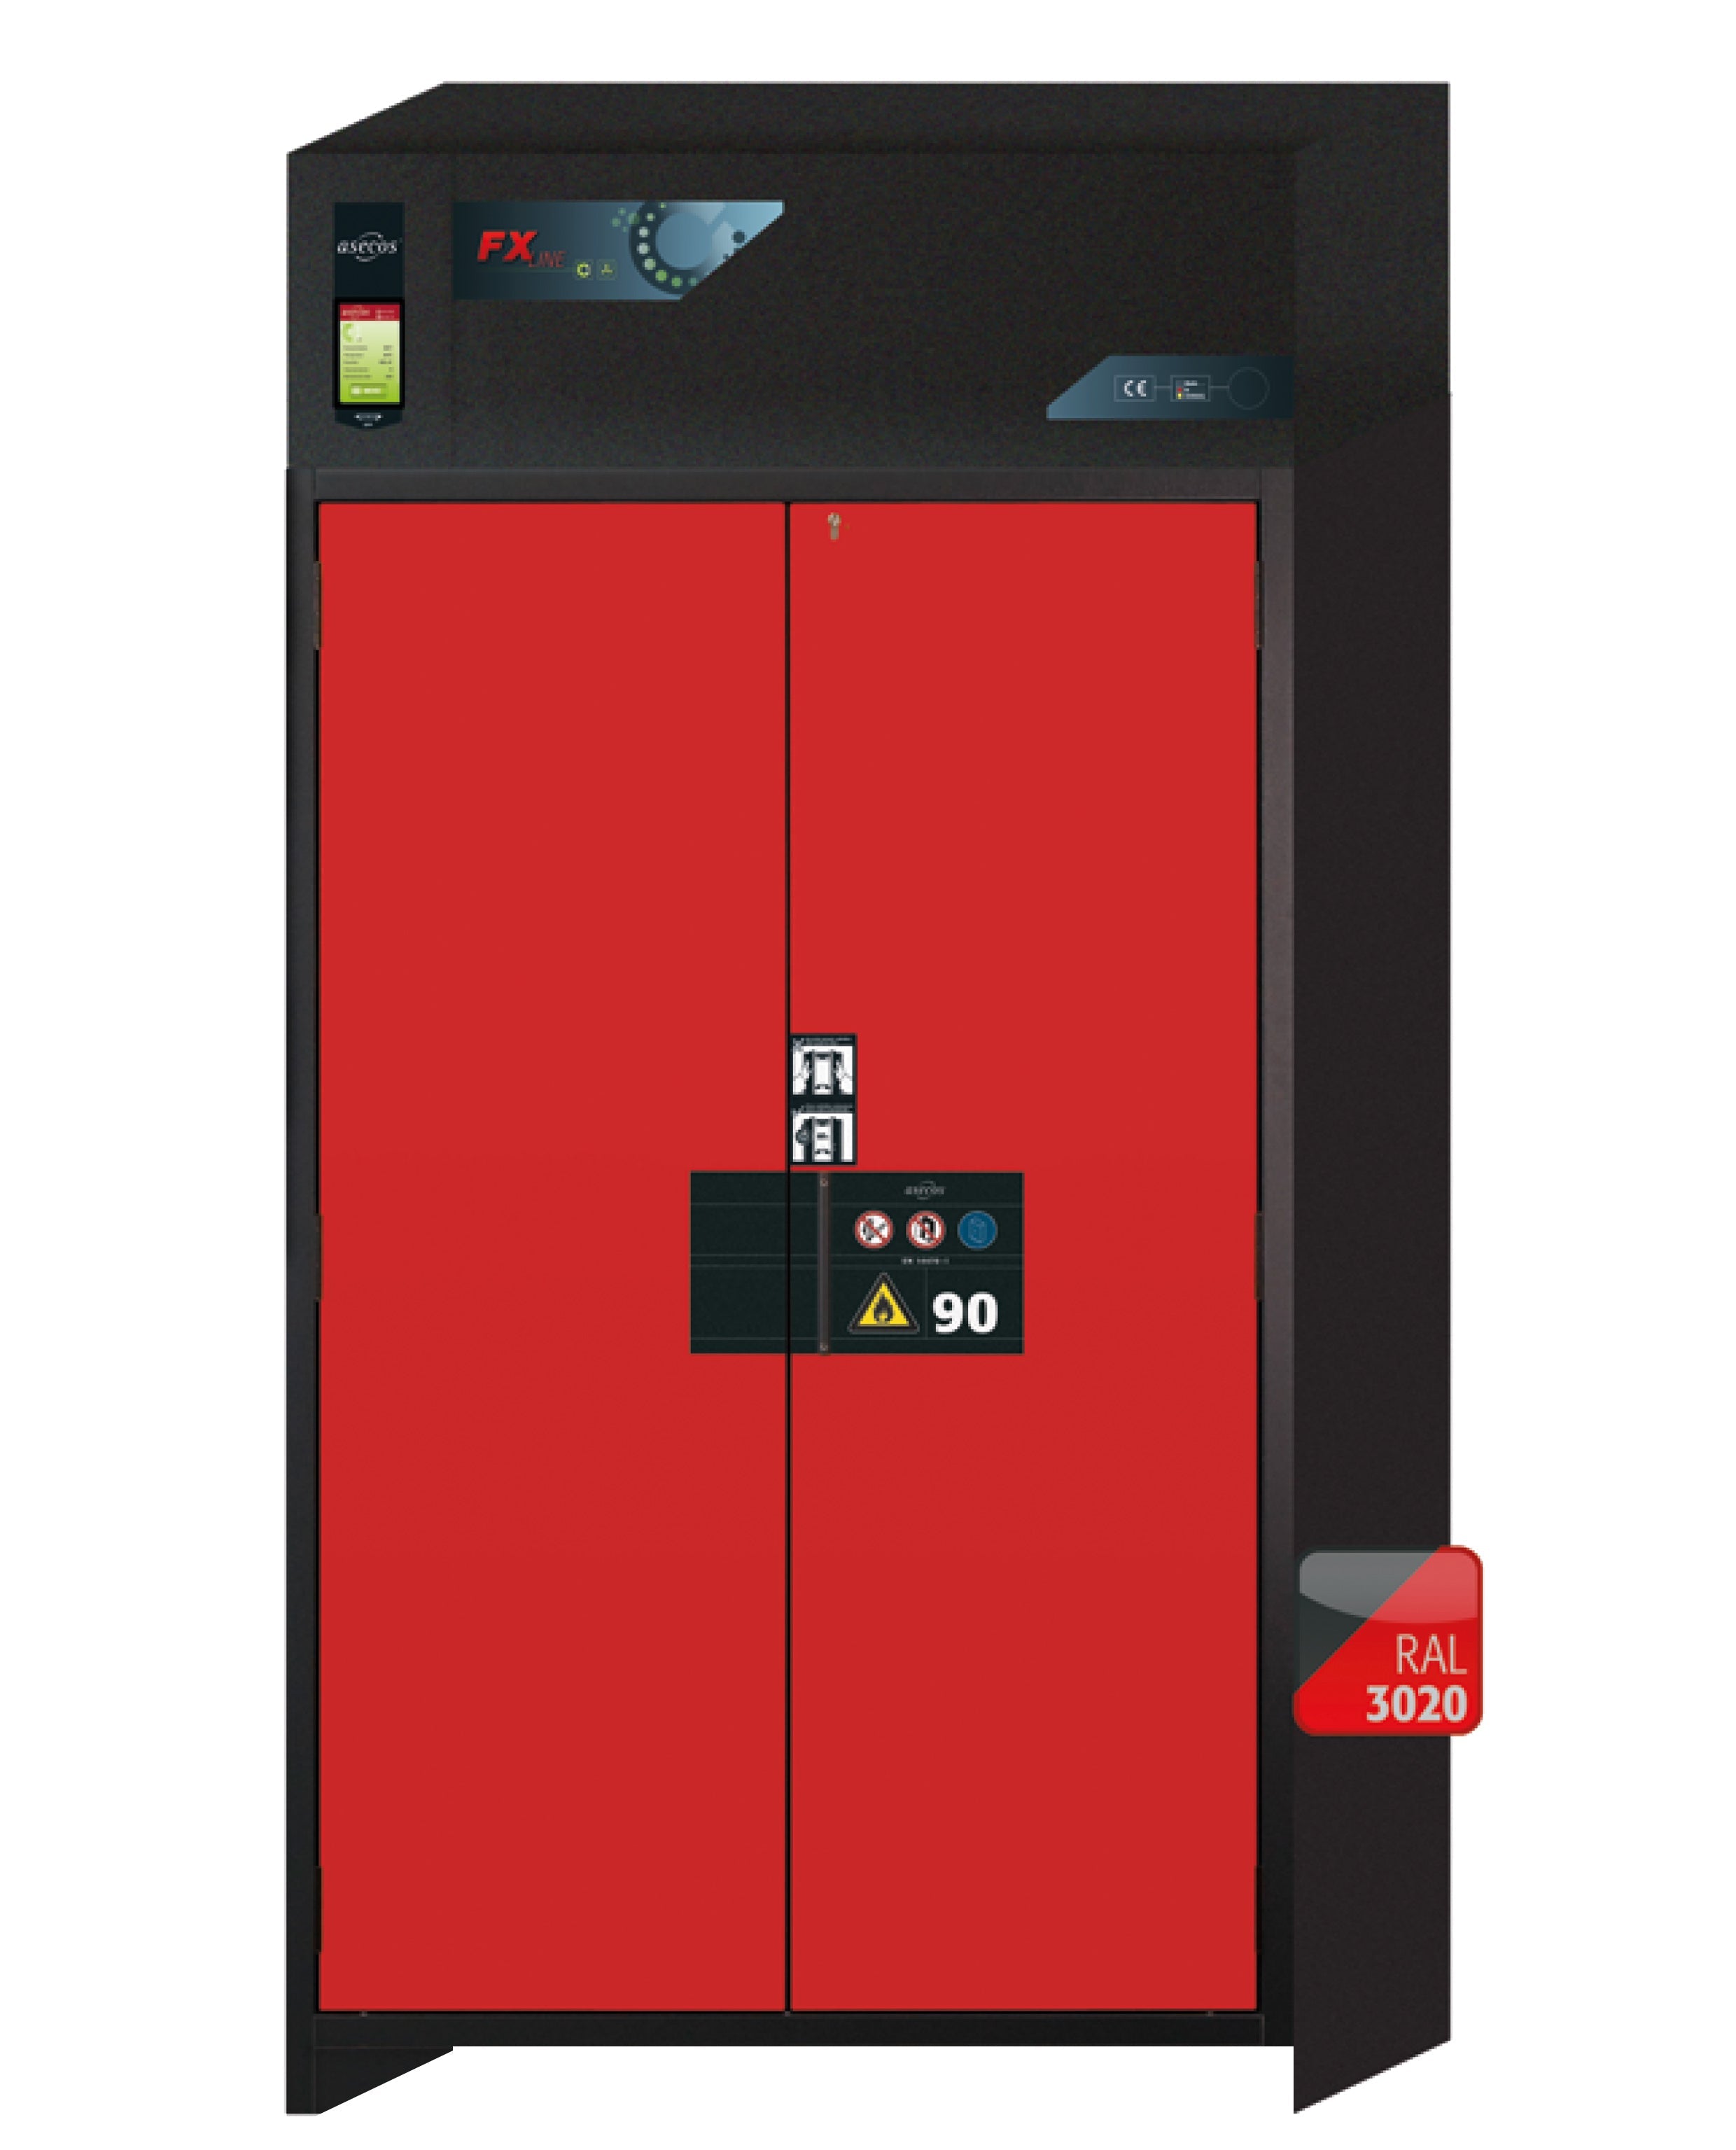 Armoire de filtration d'air recyclé type 90 FX-PEGASUS-90 modèle FX90.229.120.WDAC en rouge signalisation RAL 3020 avec 4 plateaux coulissants standard (tôle d'acier)